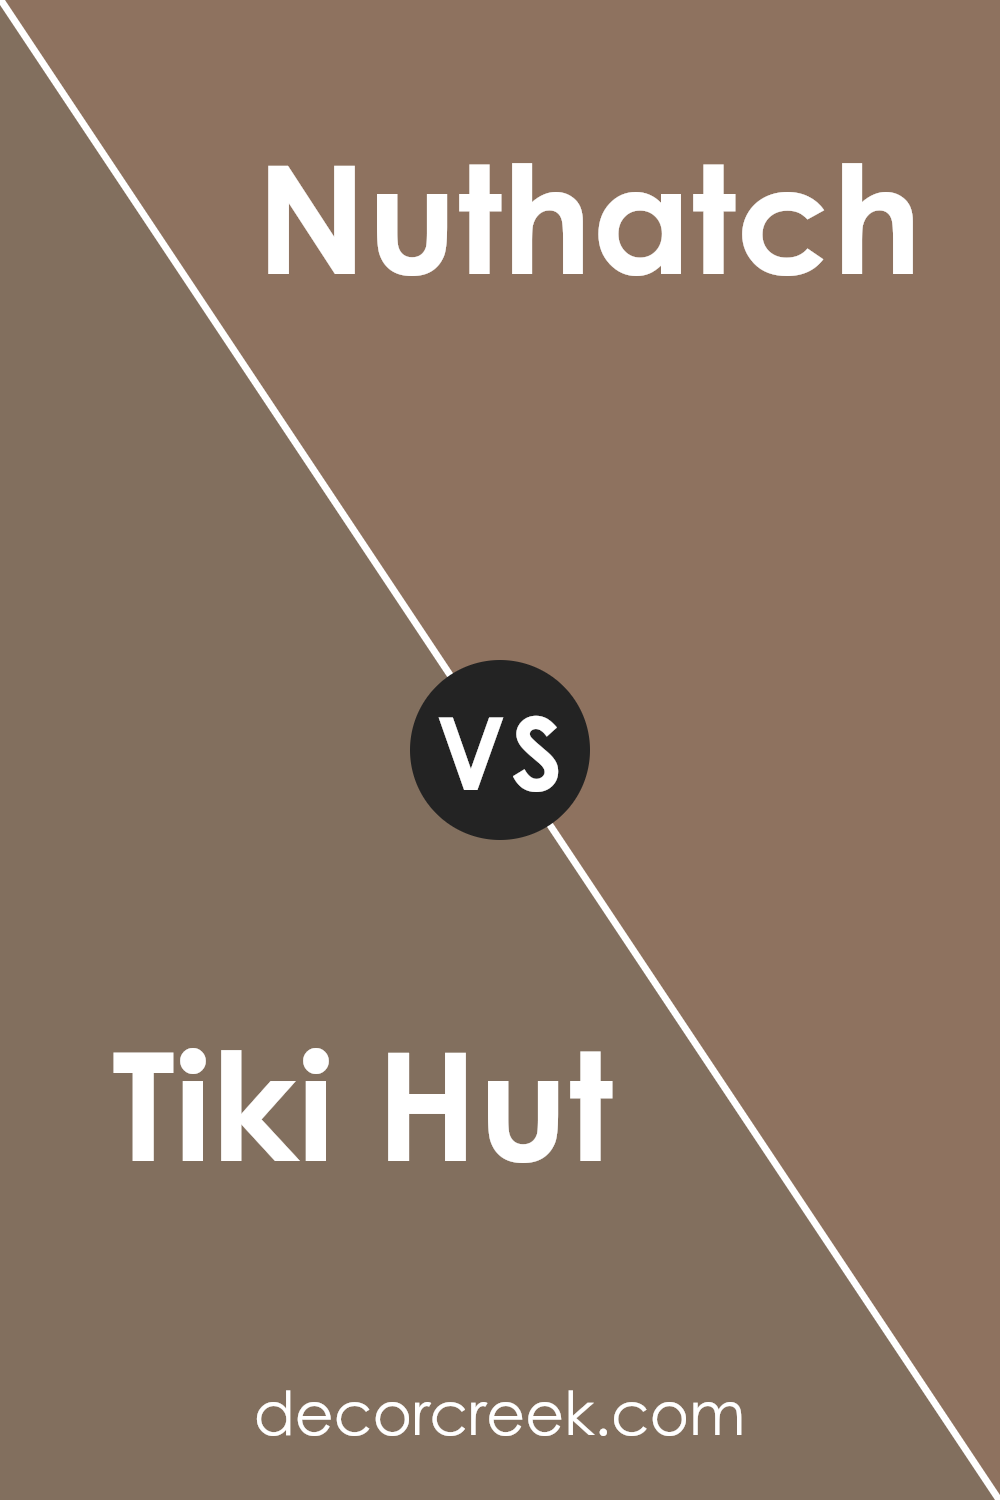 tiki_hut_sw_7509_vs_nuthatch_sw_6088